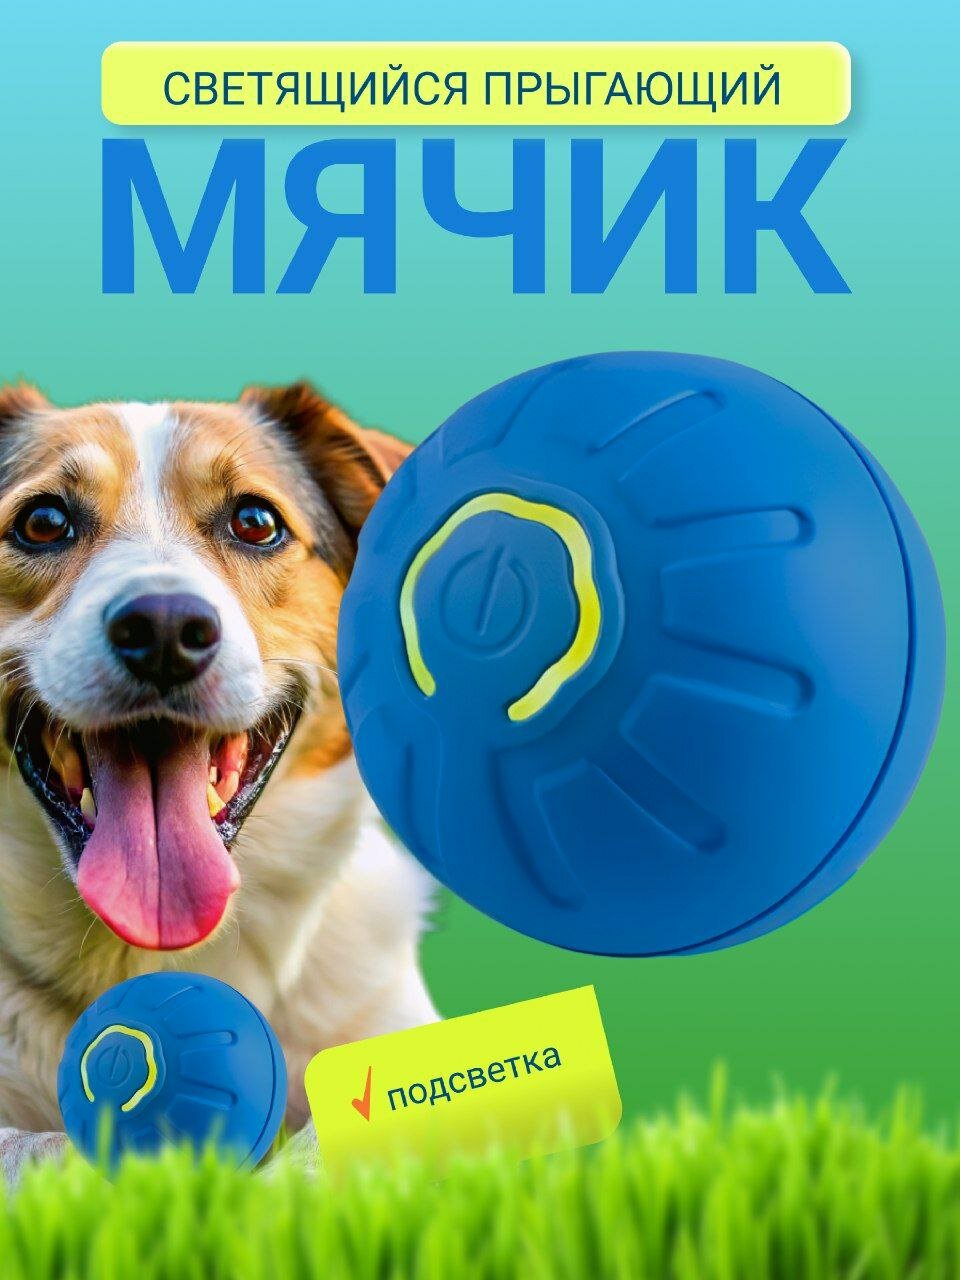 Интерактивный мячик для собак с подсветкой, синий